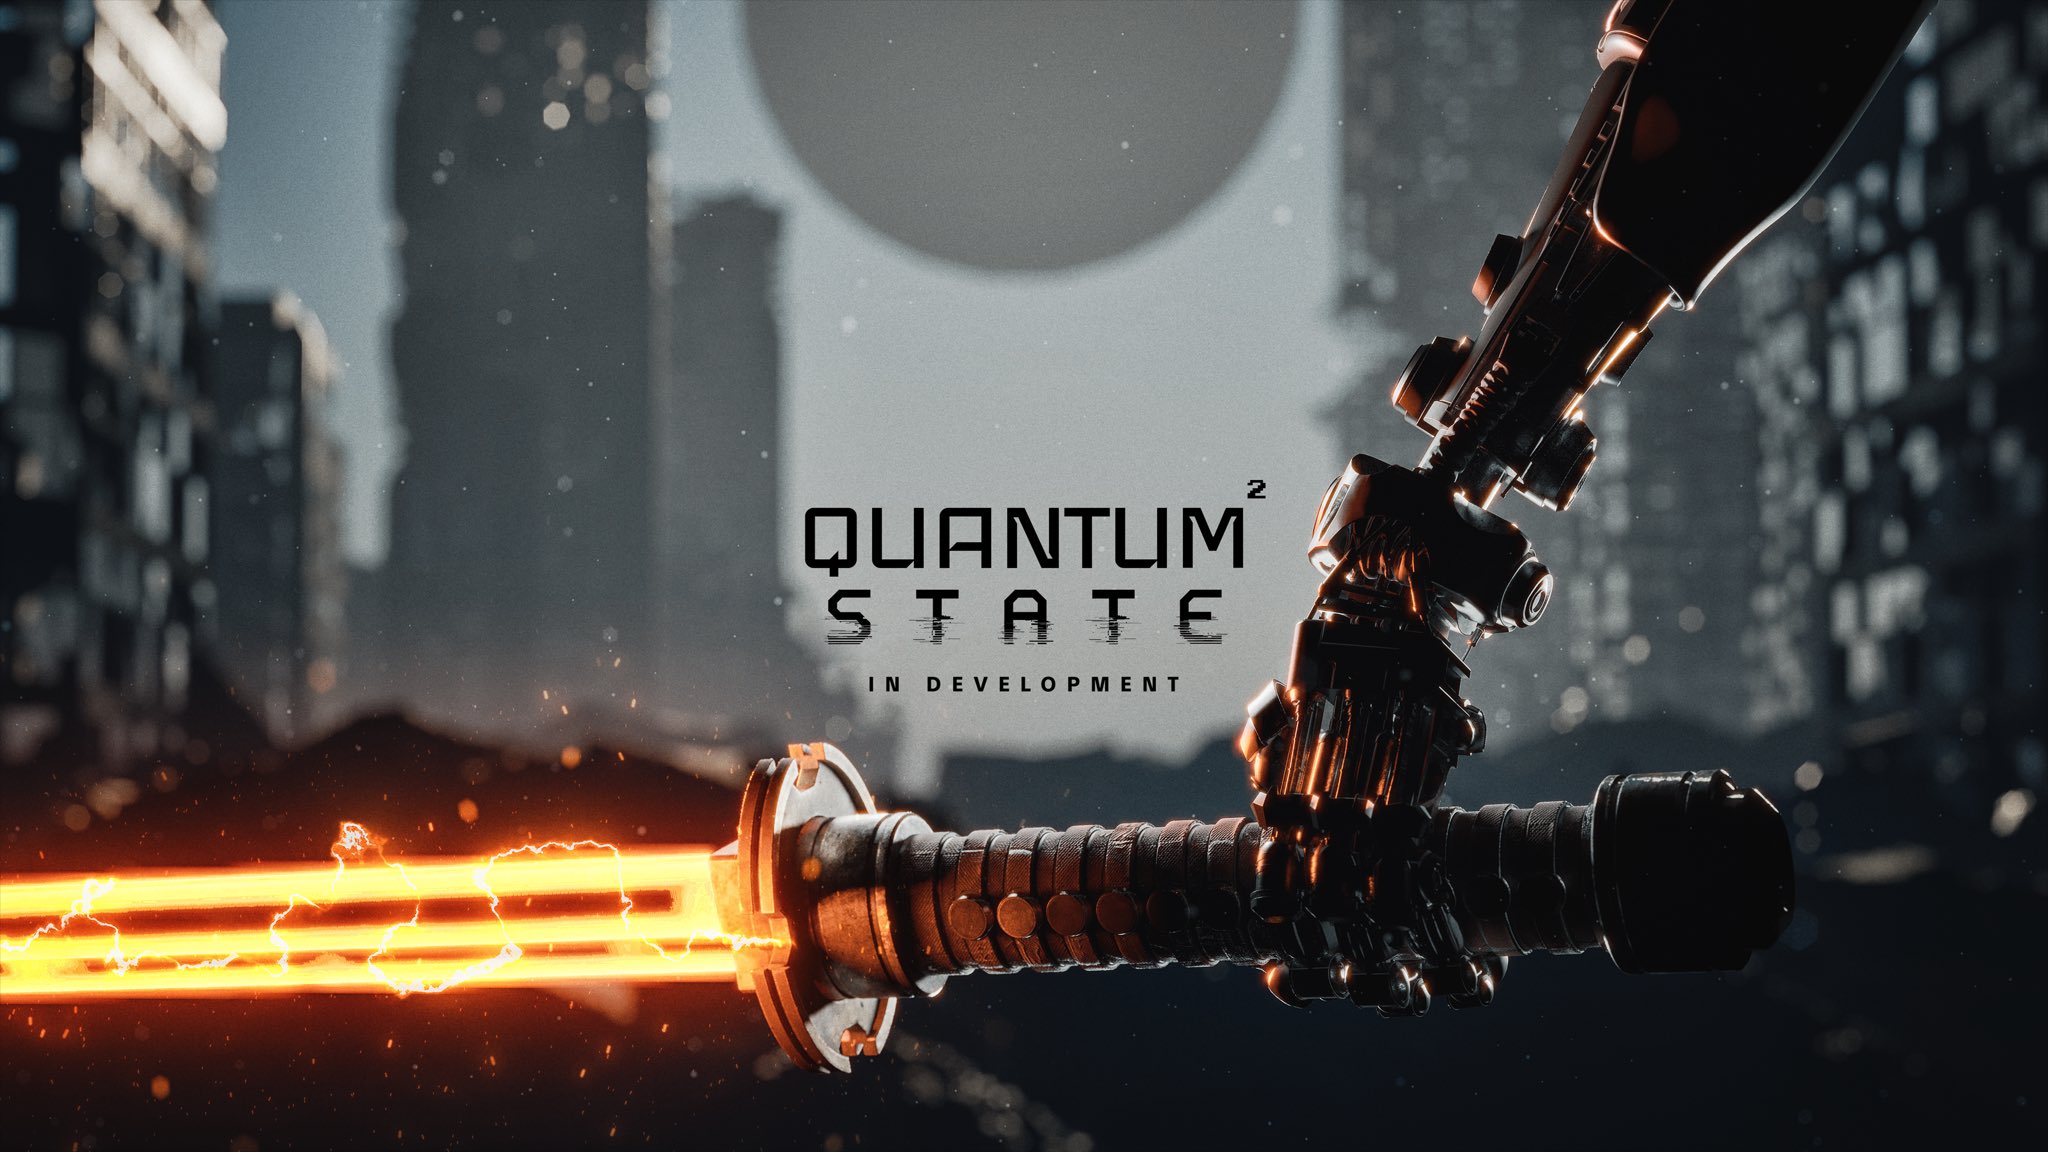 TeamKill Media announces Quantum State, the sequel to Quantum Error